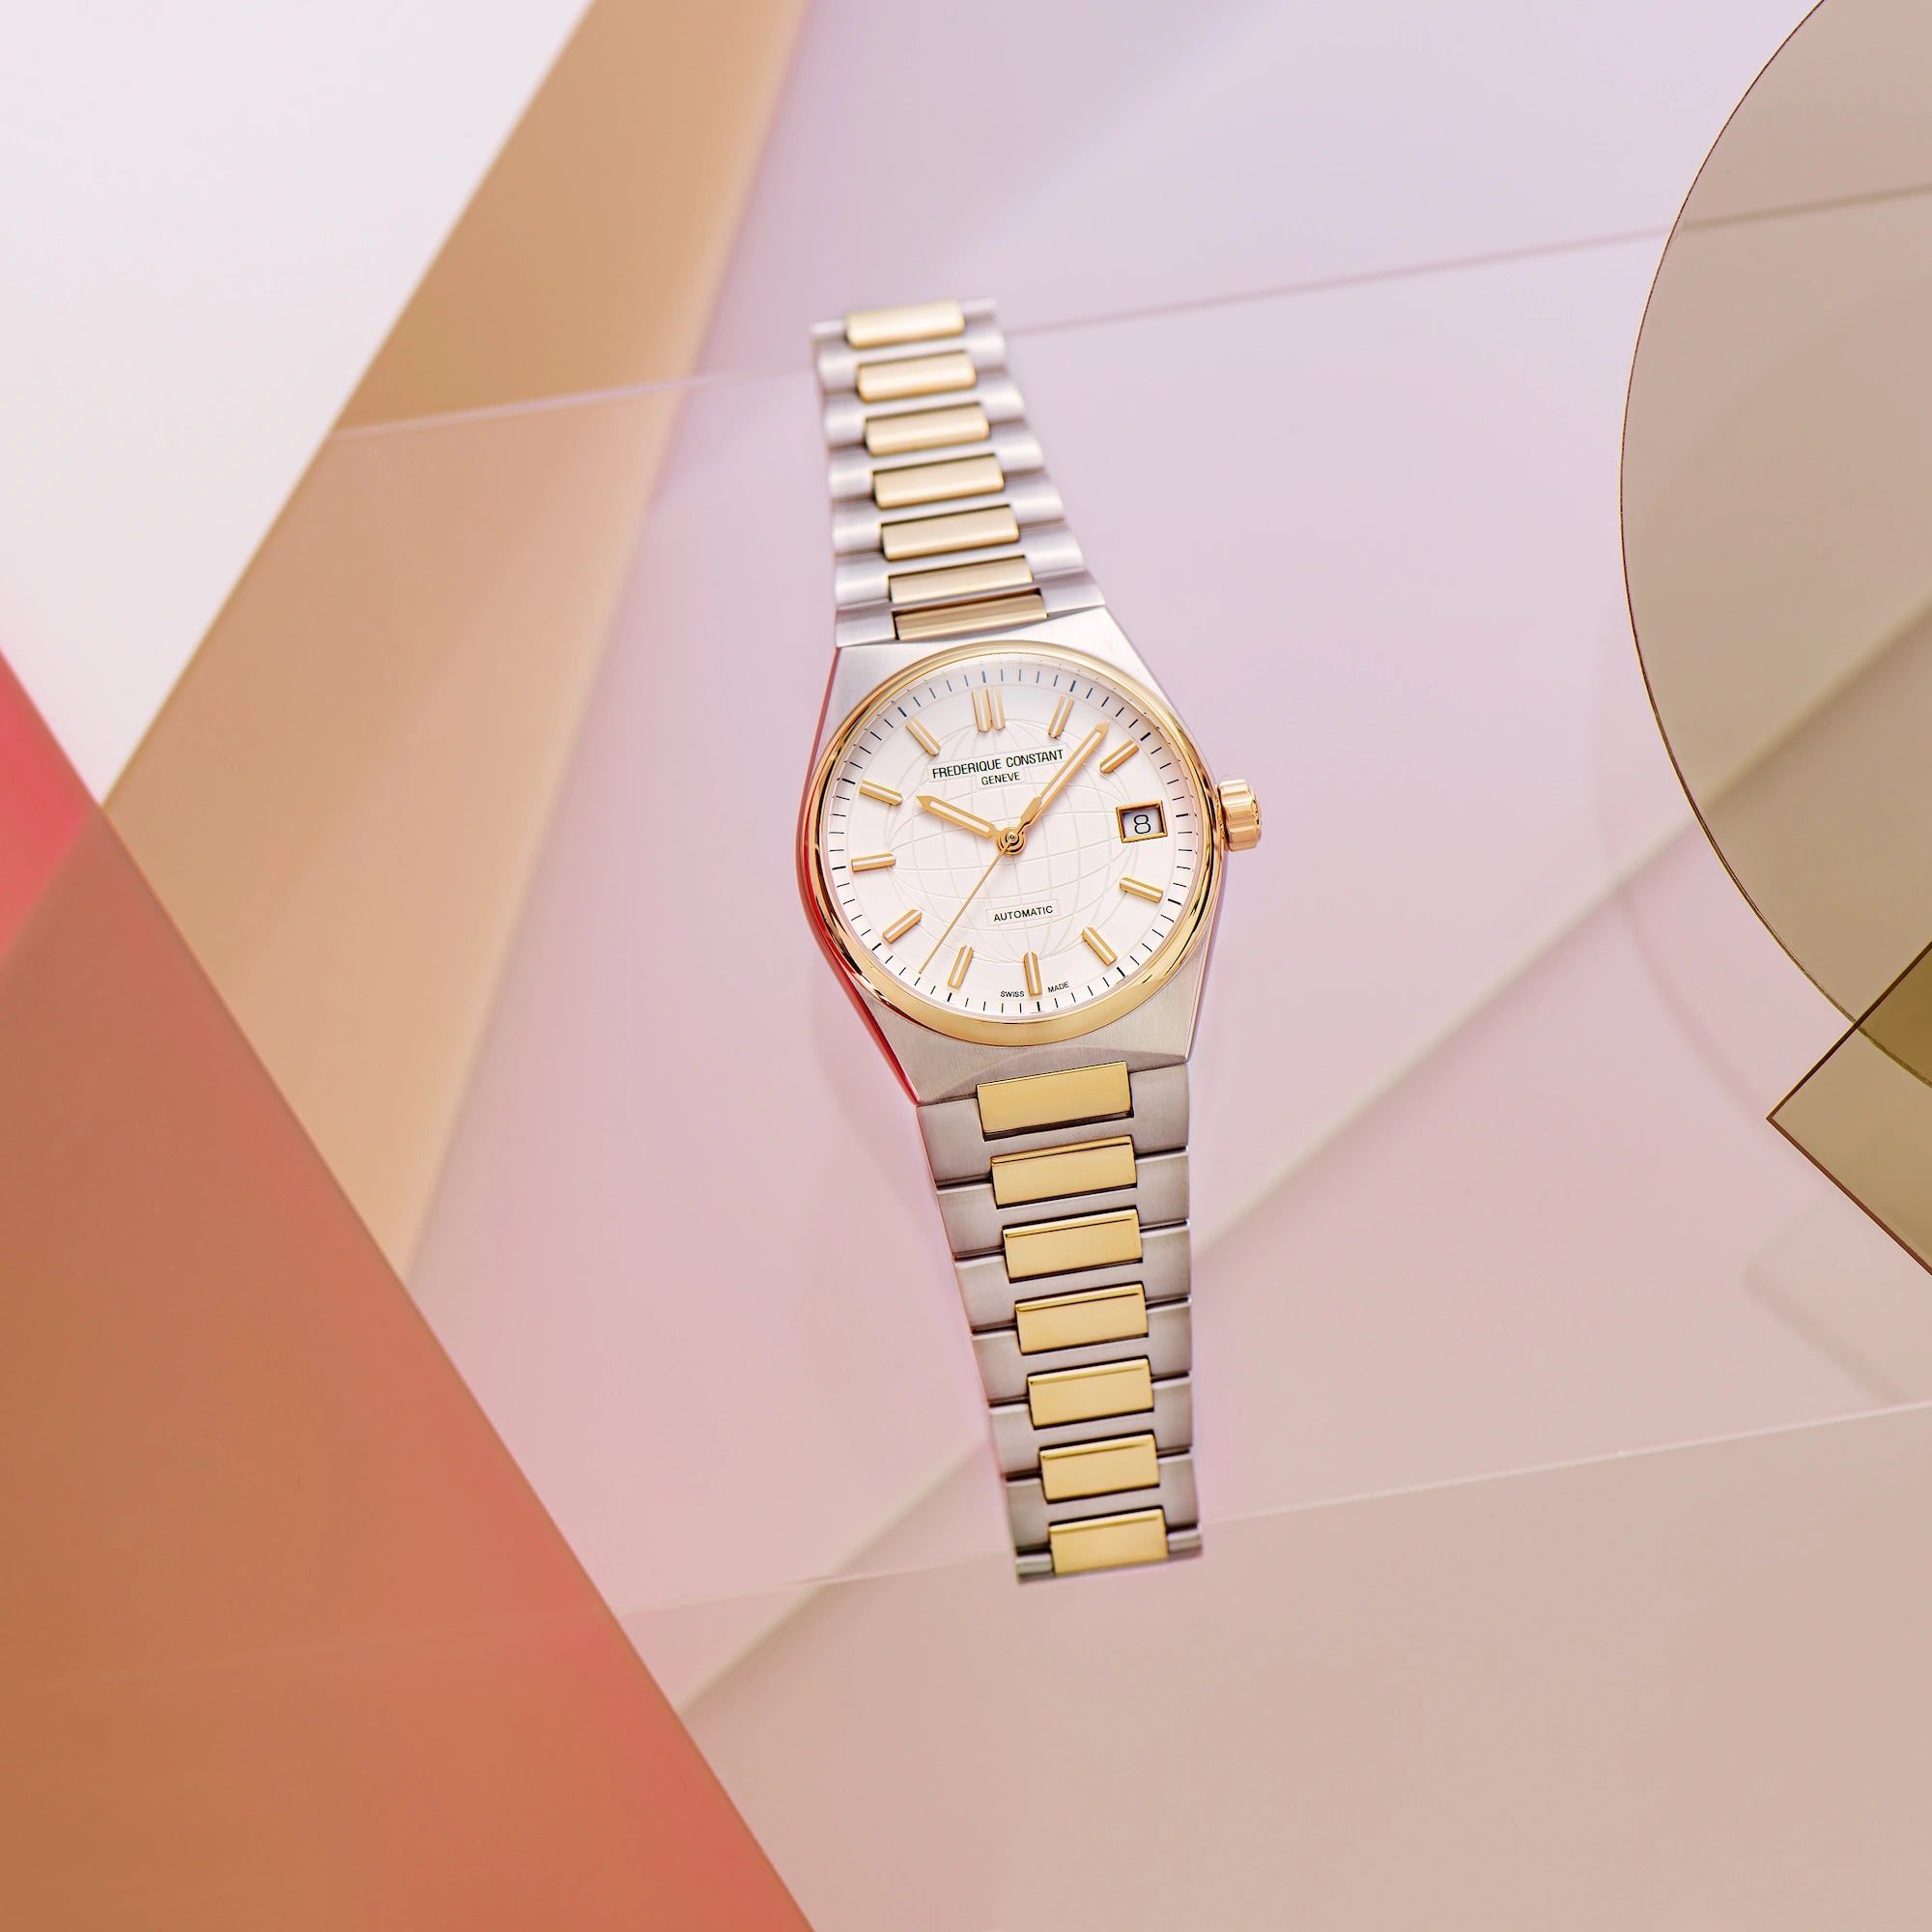 Produktfotografie der Frederique Constant Uhr "Highlife Ladies Automatic" mit einem weißen Zifferblatt und Stahl-Gold-Gehäuse